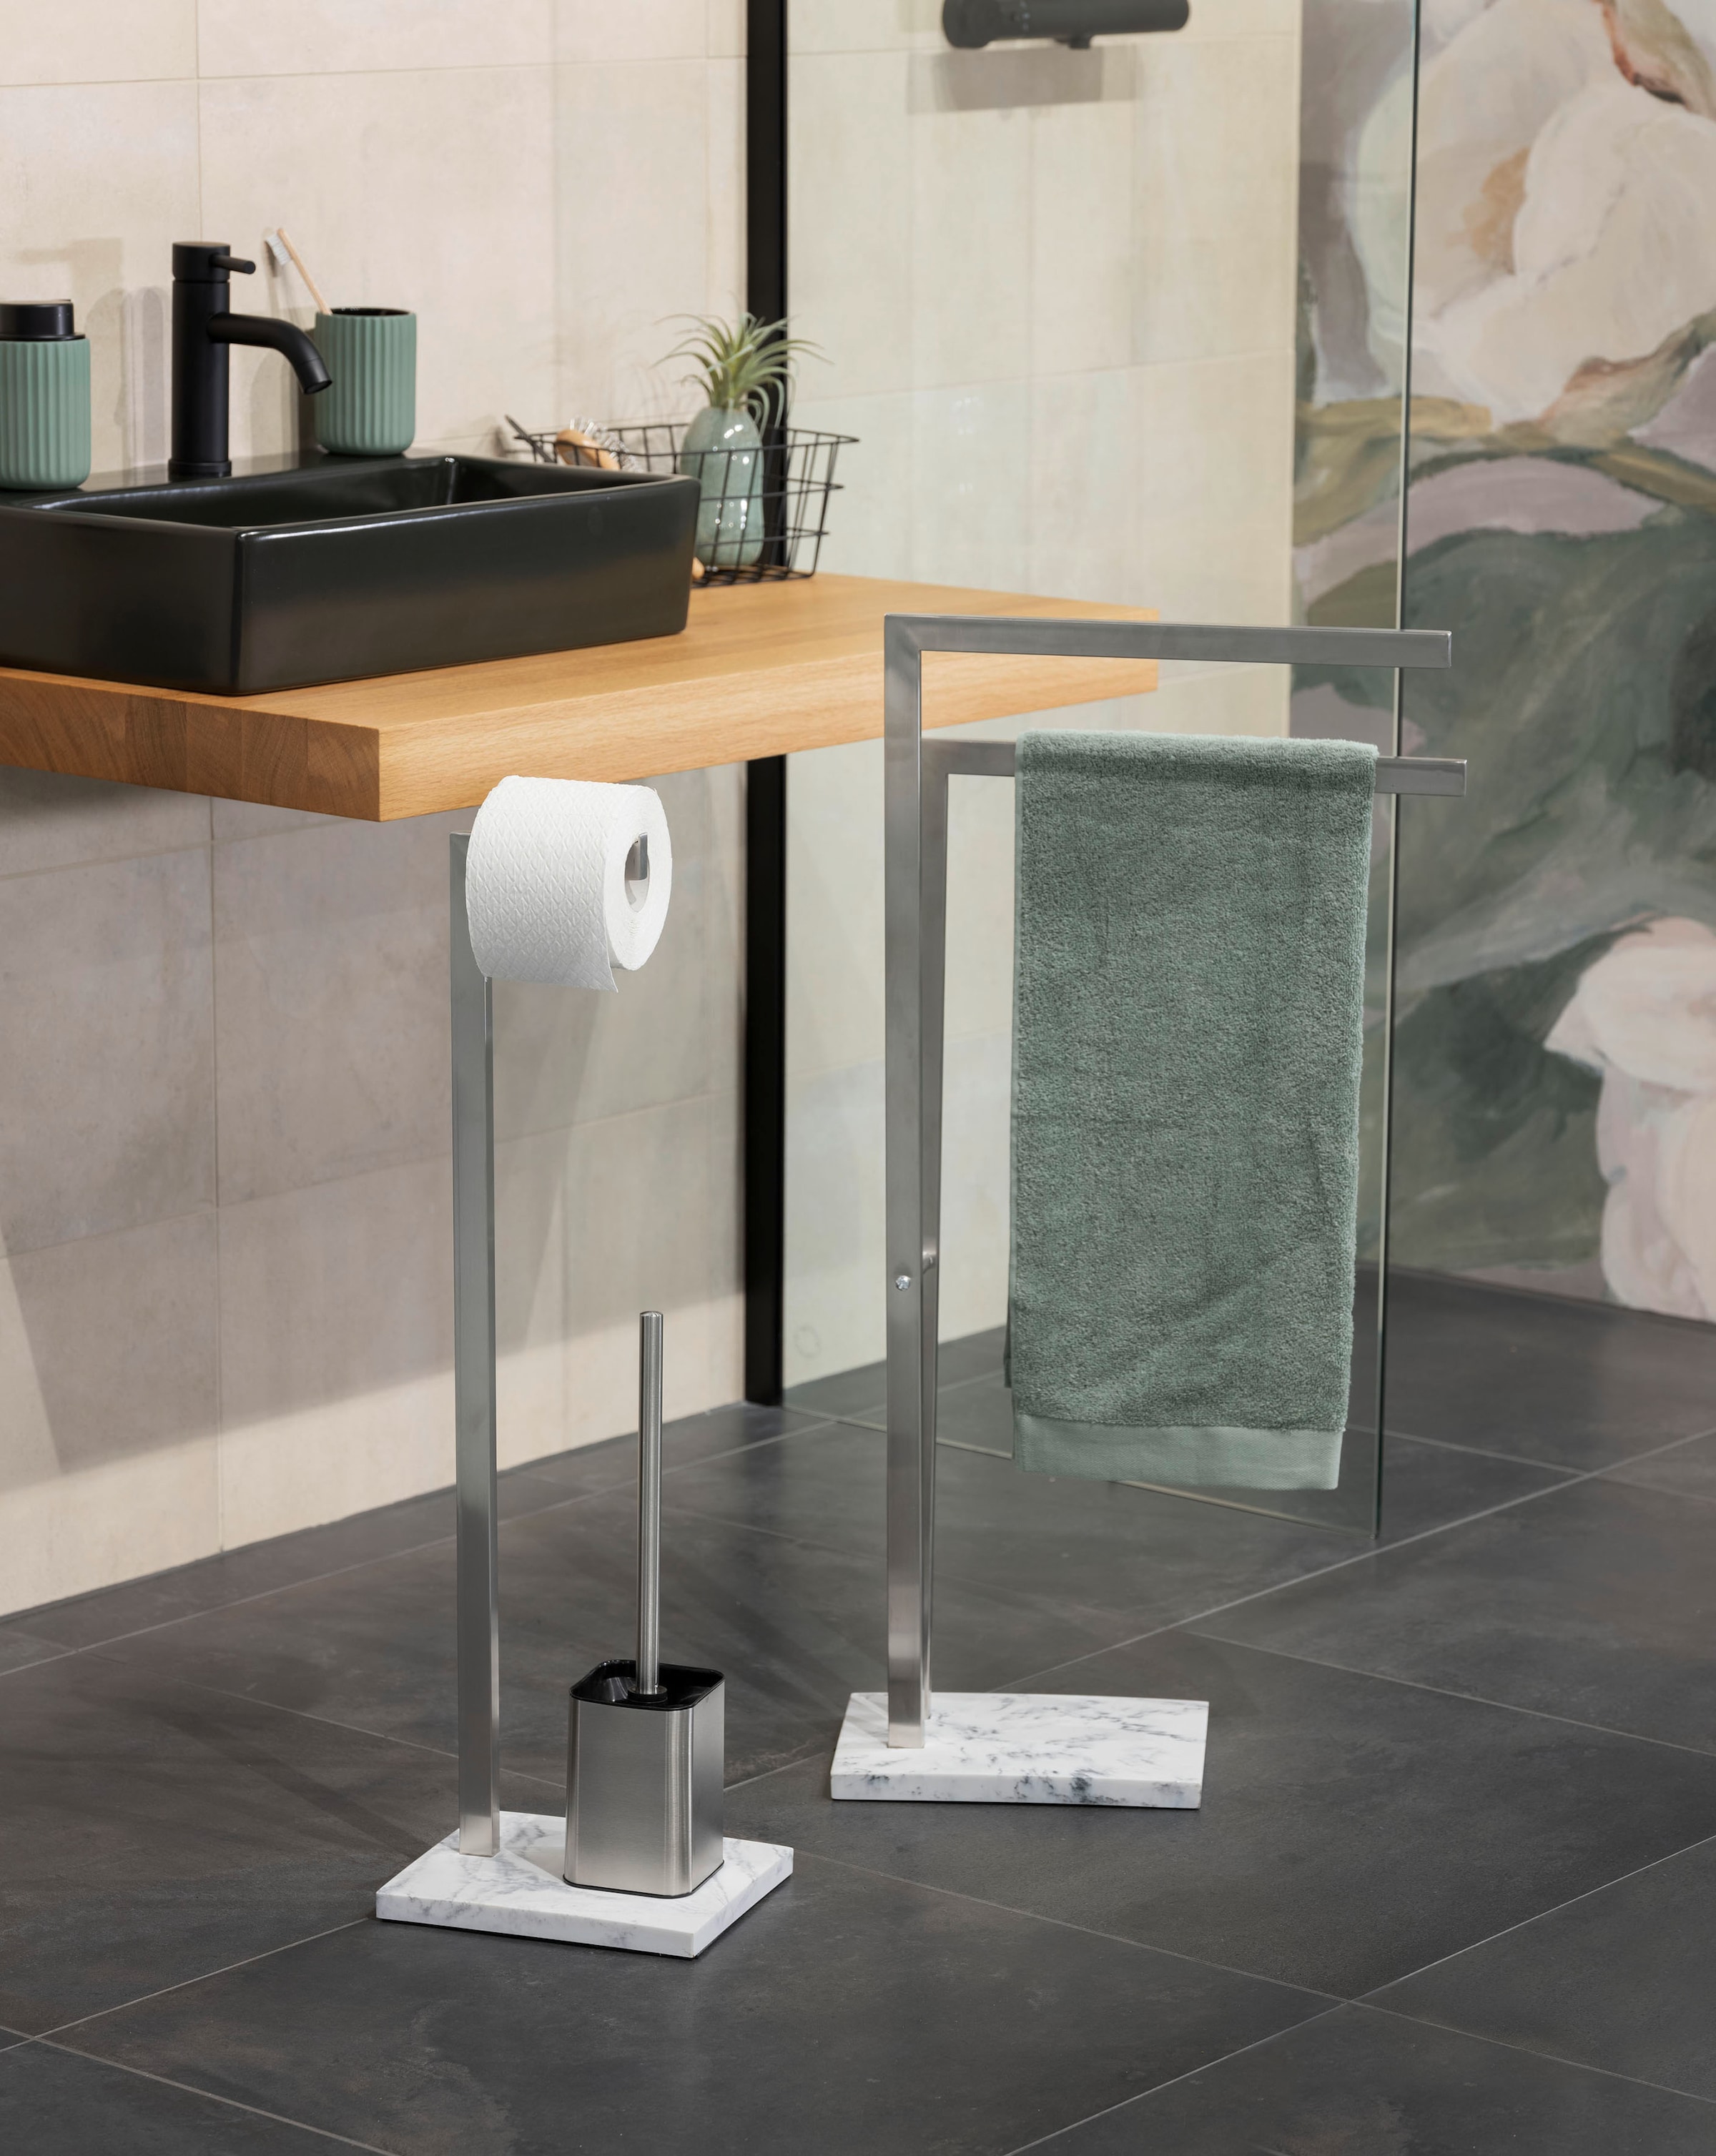 WENKO WC-Garnitur »Aprilia«, aus Edelstahl-Kunststoff, inkl. Rollenhalter und WC-Bürste